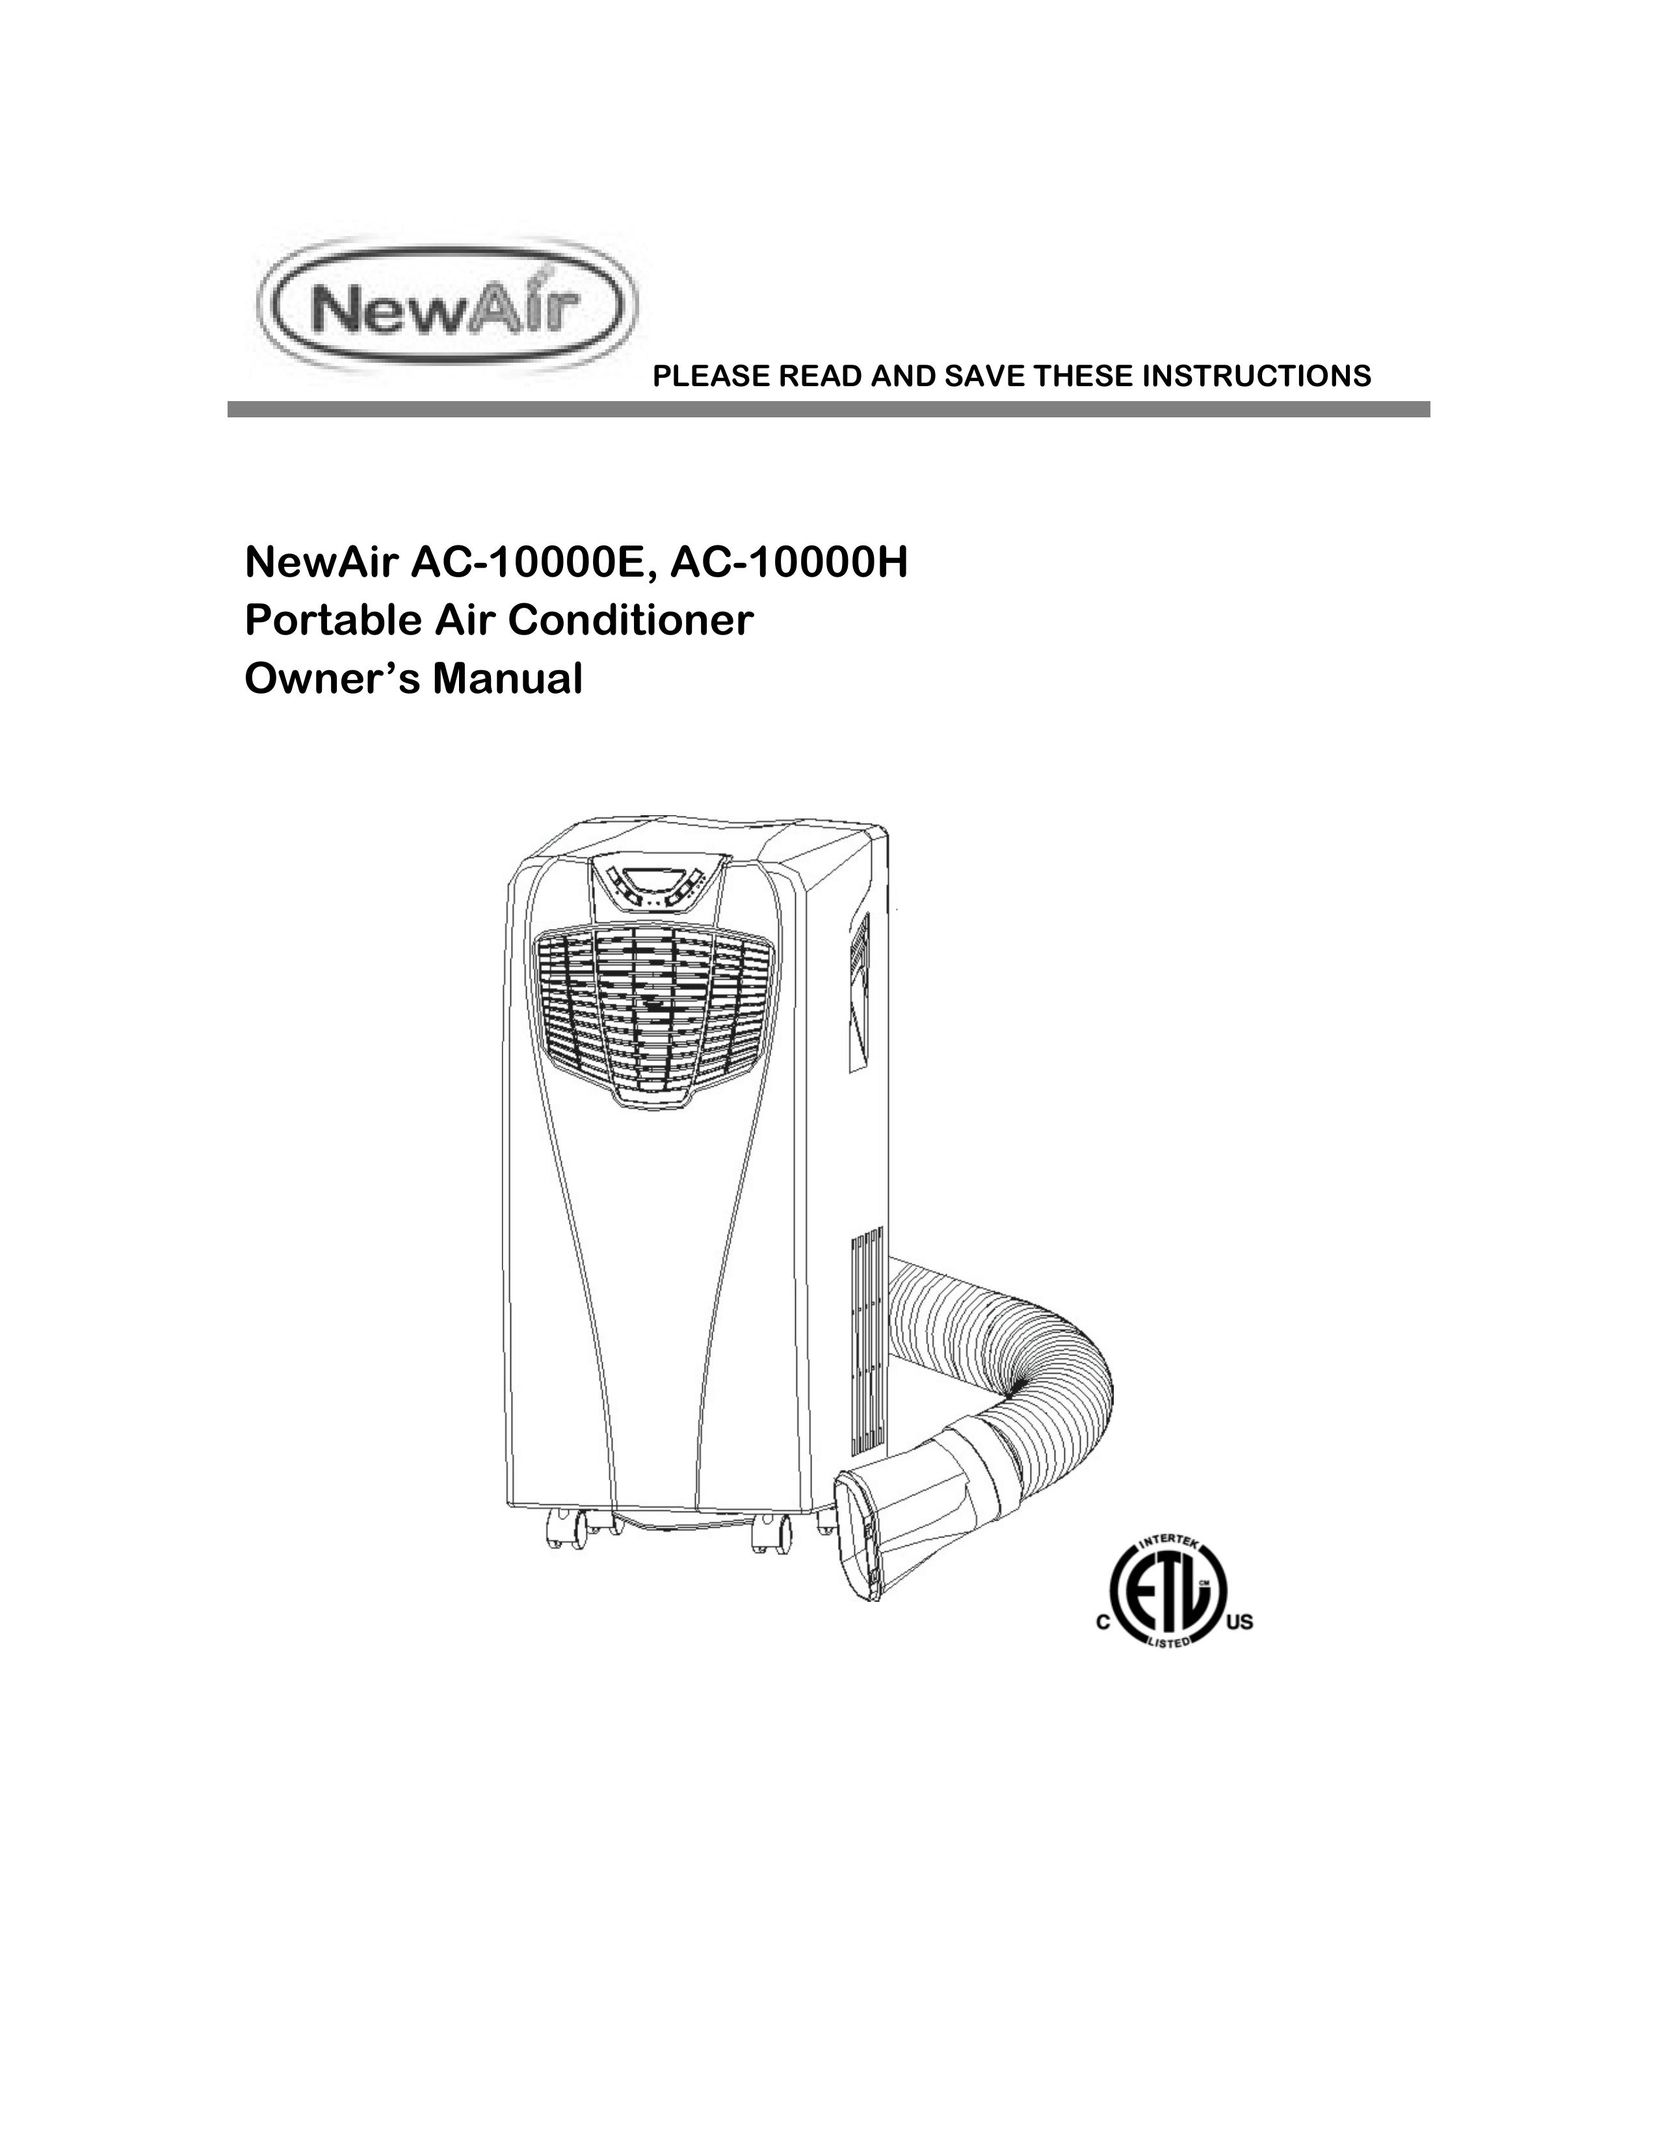 NewAir AC-10000E Air Conditioner User Manual